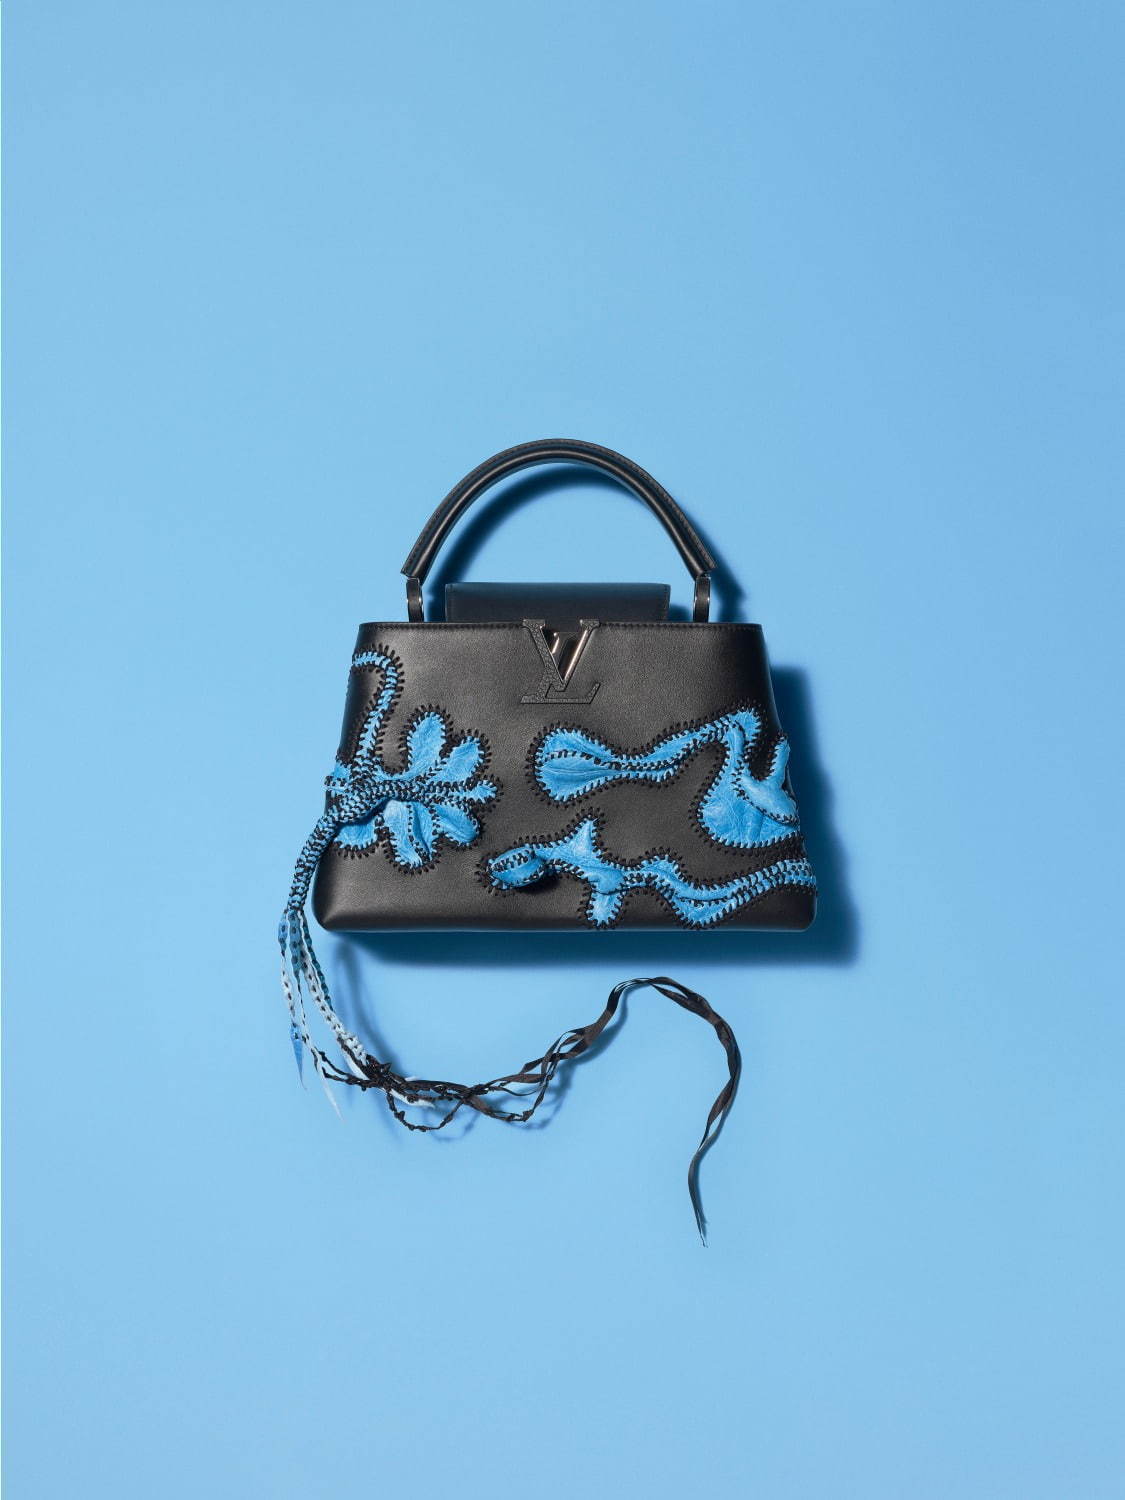 ルイ・ヴィトンのバッグ「カプシーヌ」現代アーティストとコラボ